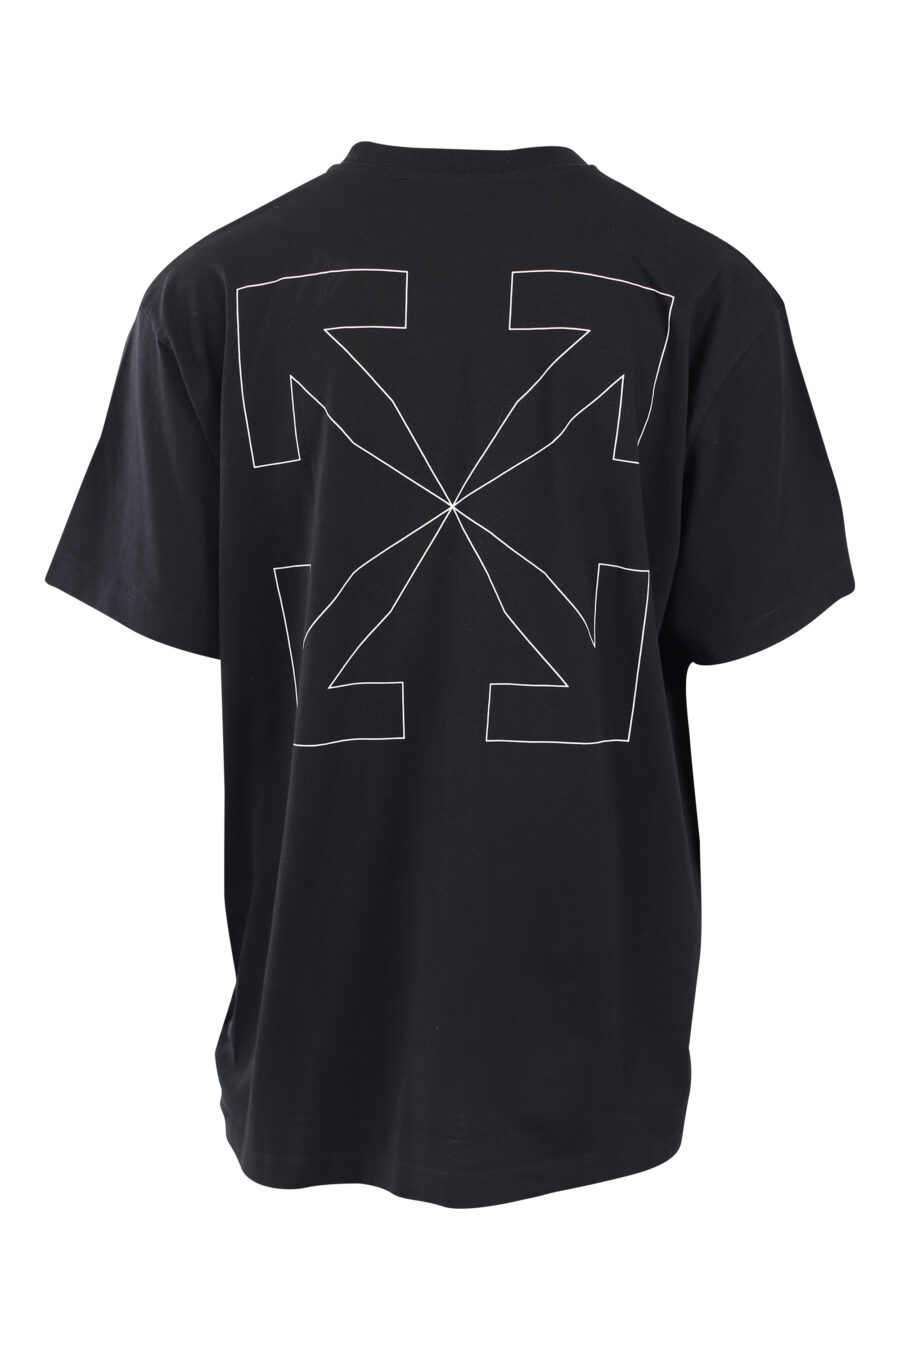 Camiseta negra con maxilogo "arrow" silueta blanco - IMG 2571